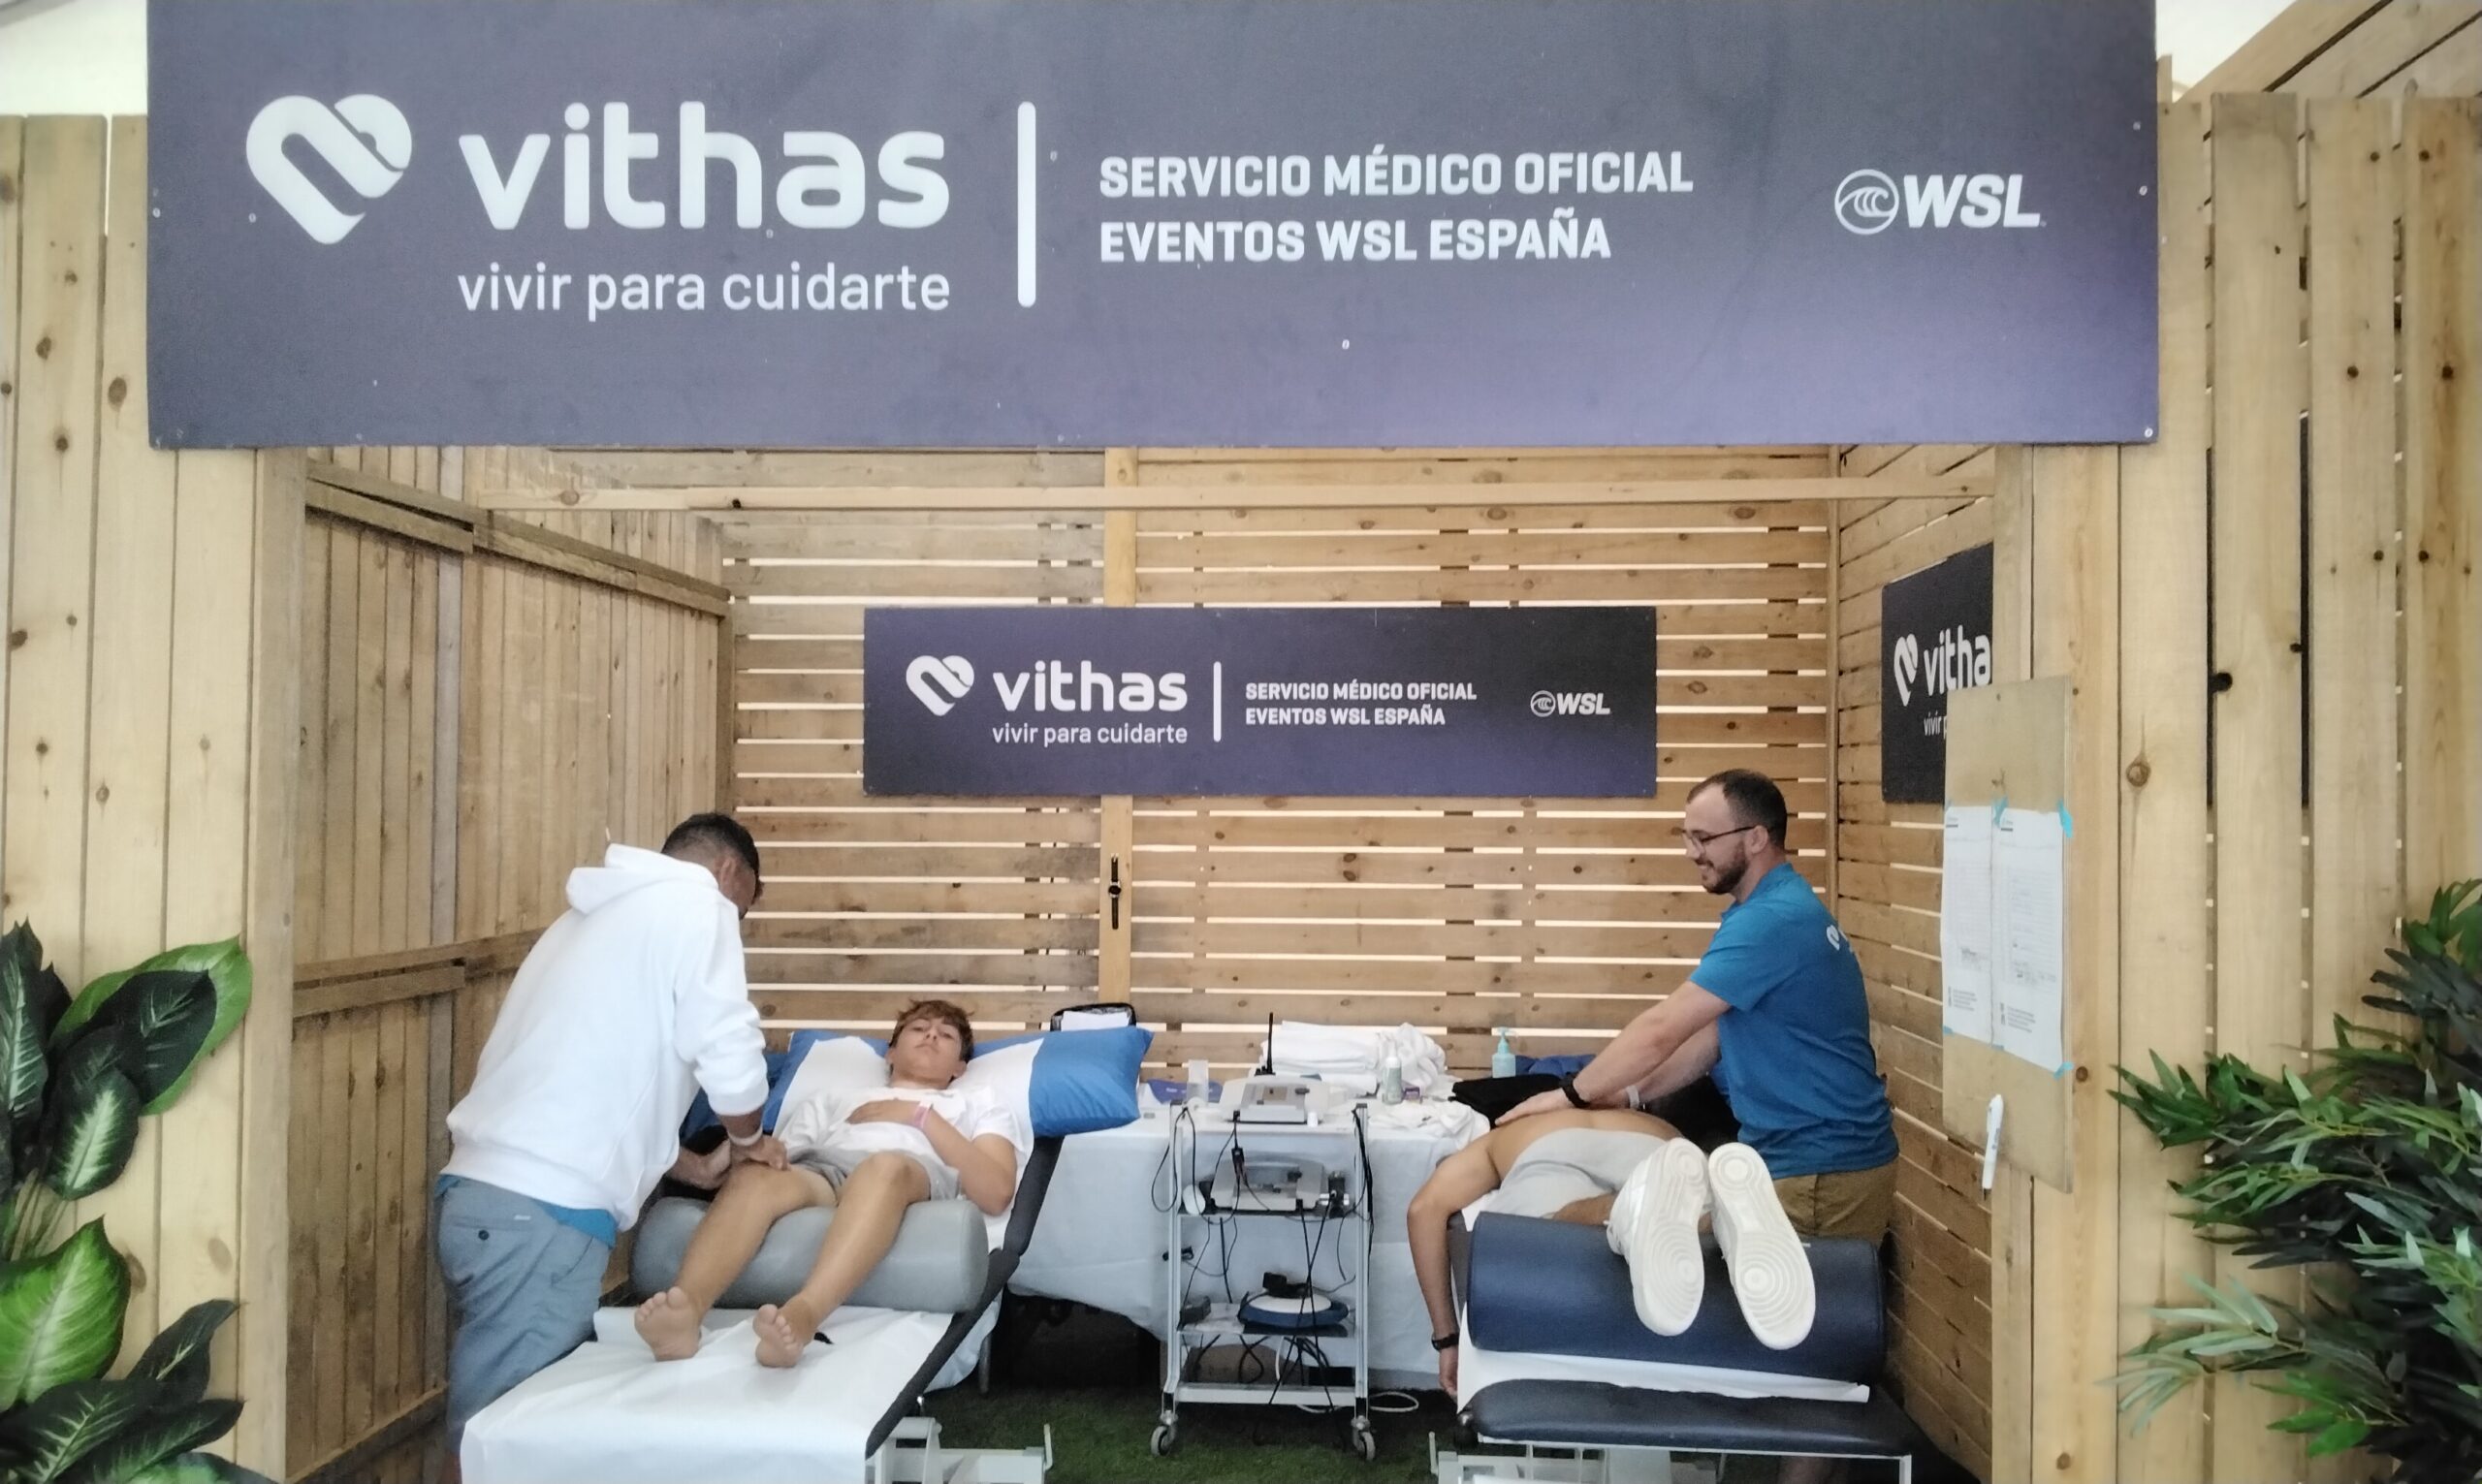 Vithas repite como servicio médico oficial de la World Surf League en España